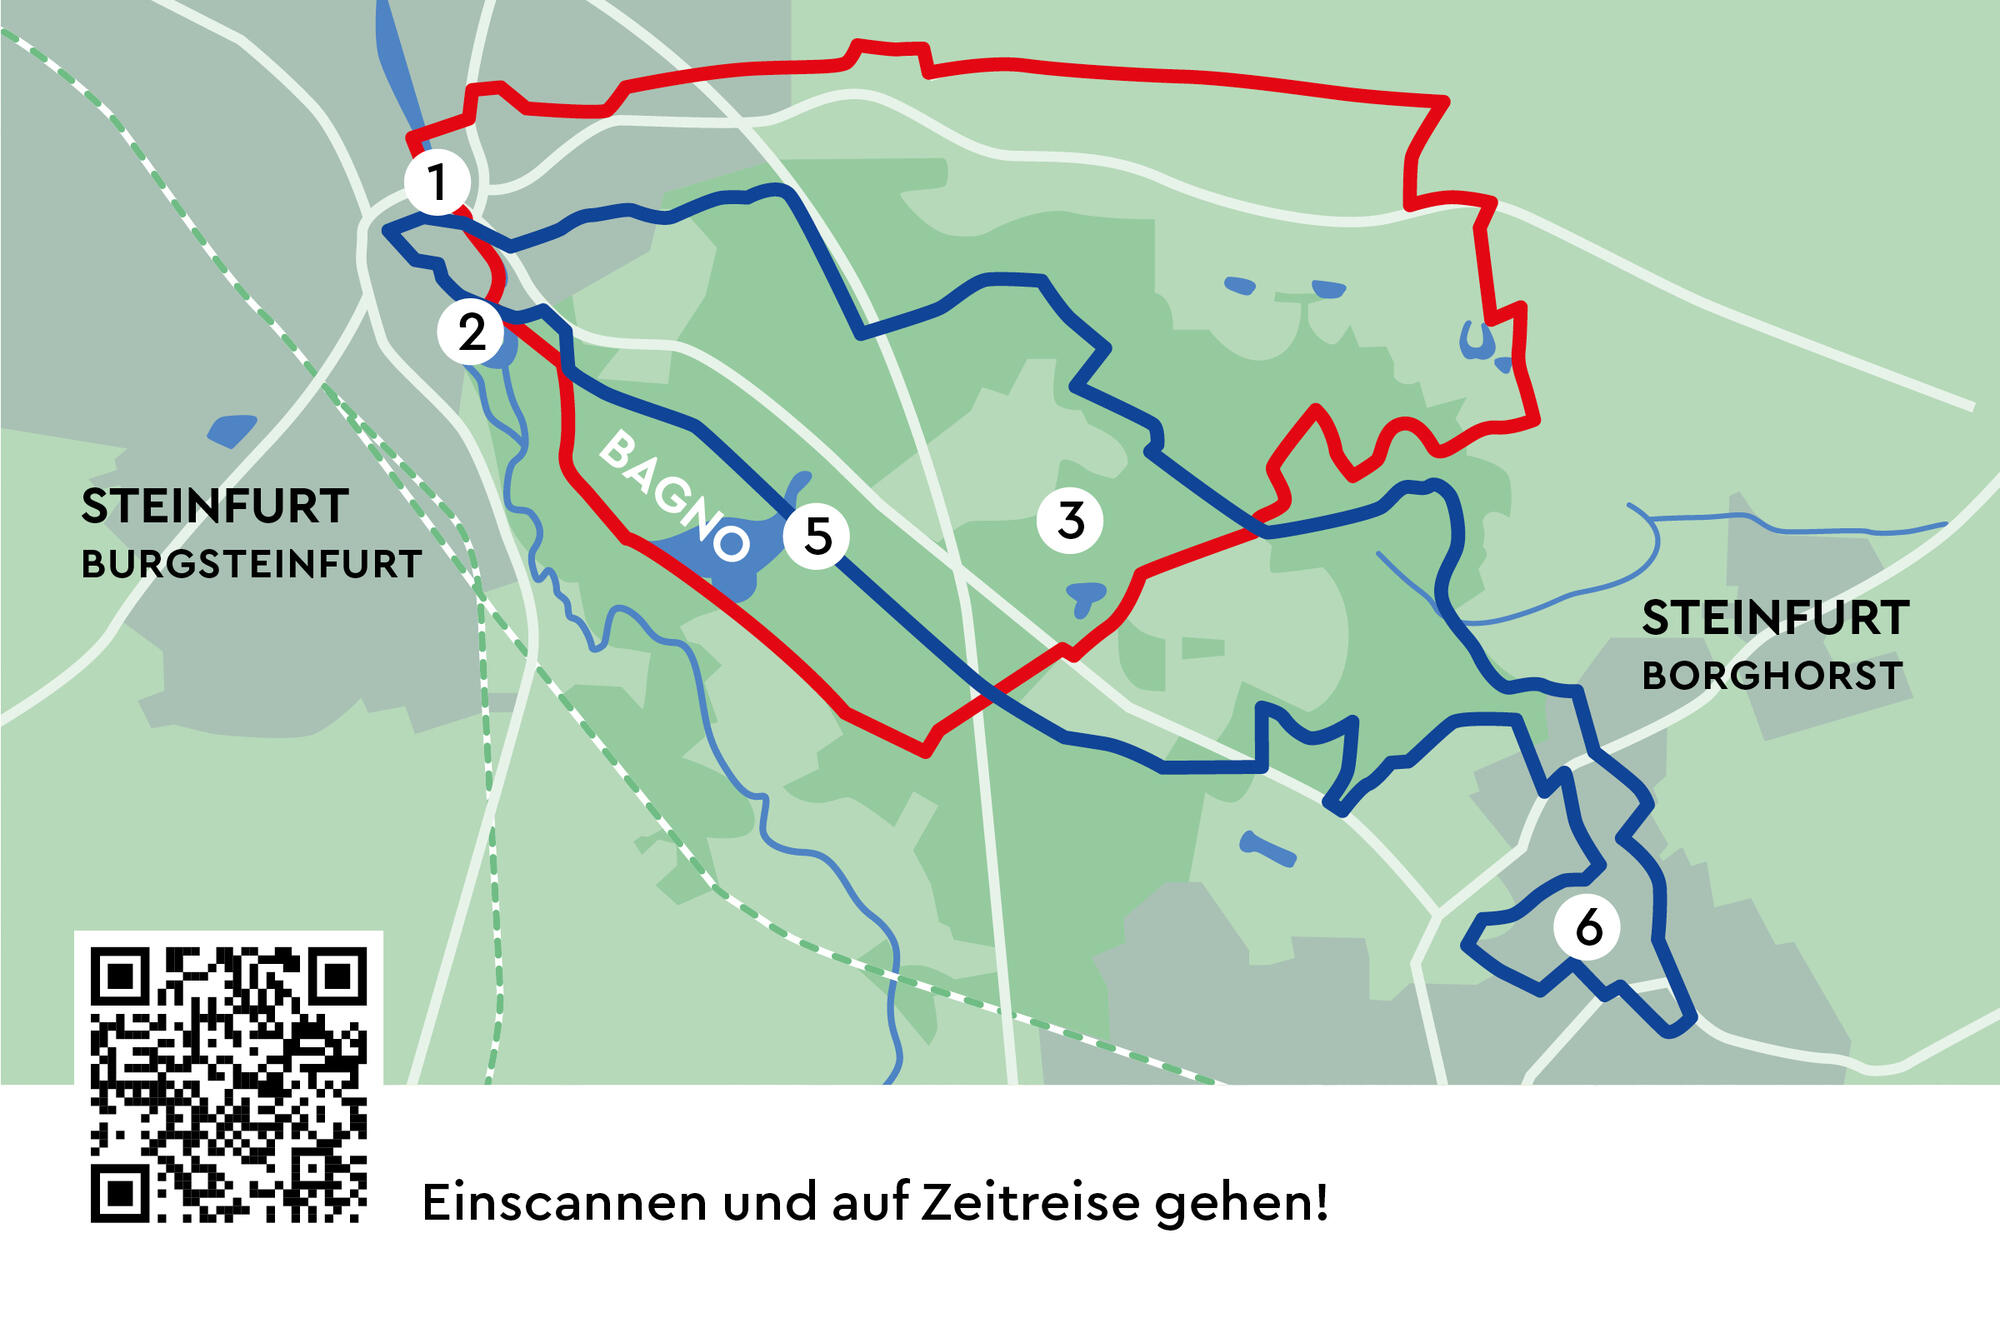 Karte mit Tour-Vorschlägen im Bagno Steinfurt